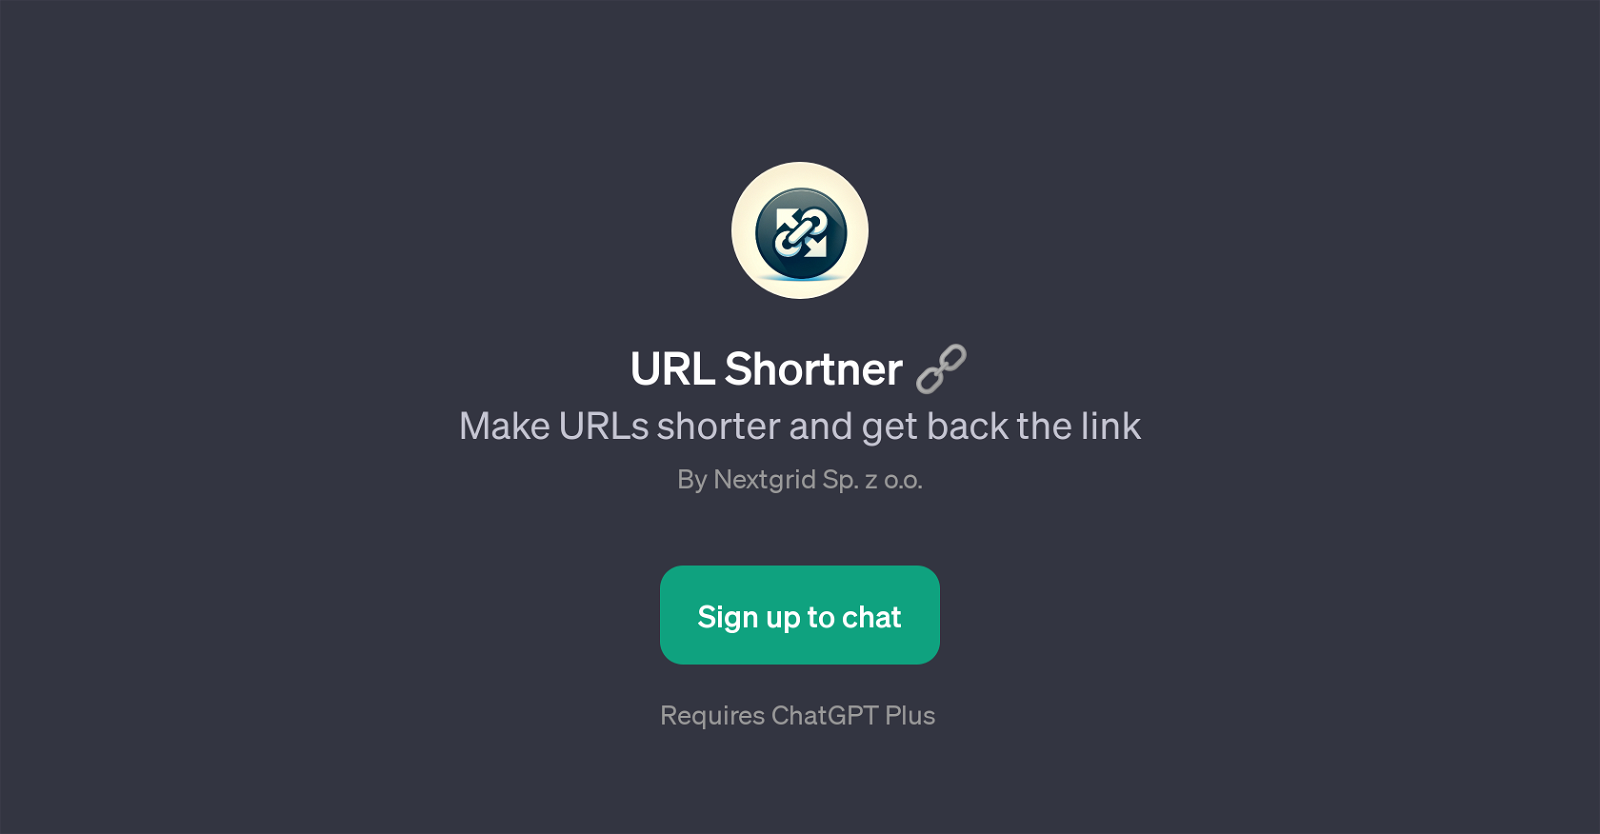 URL Shortner website